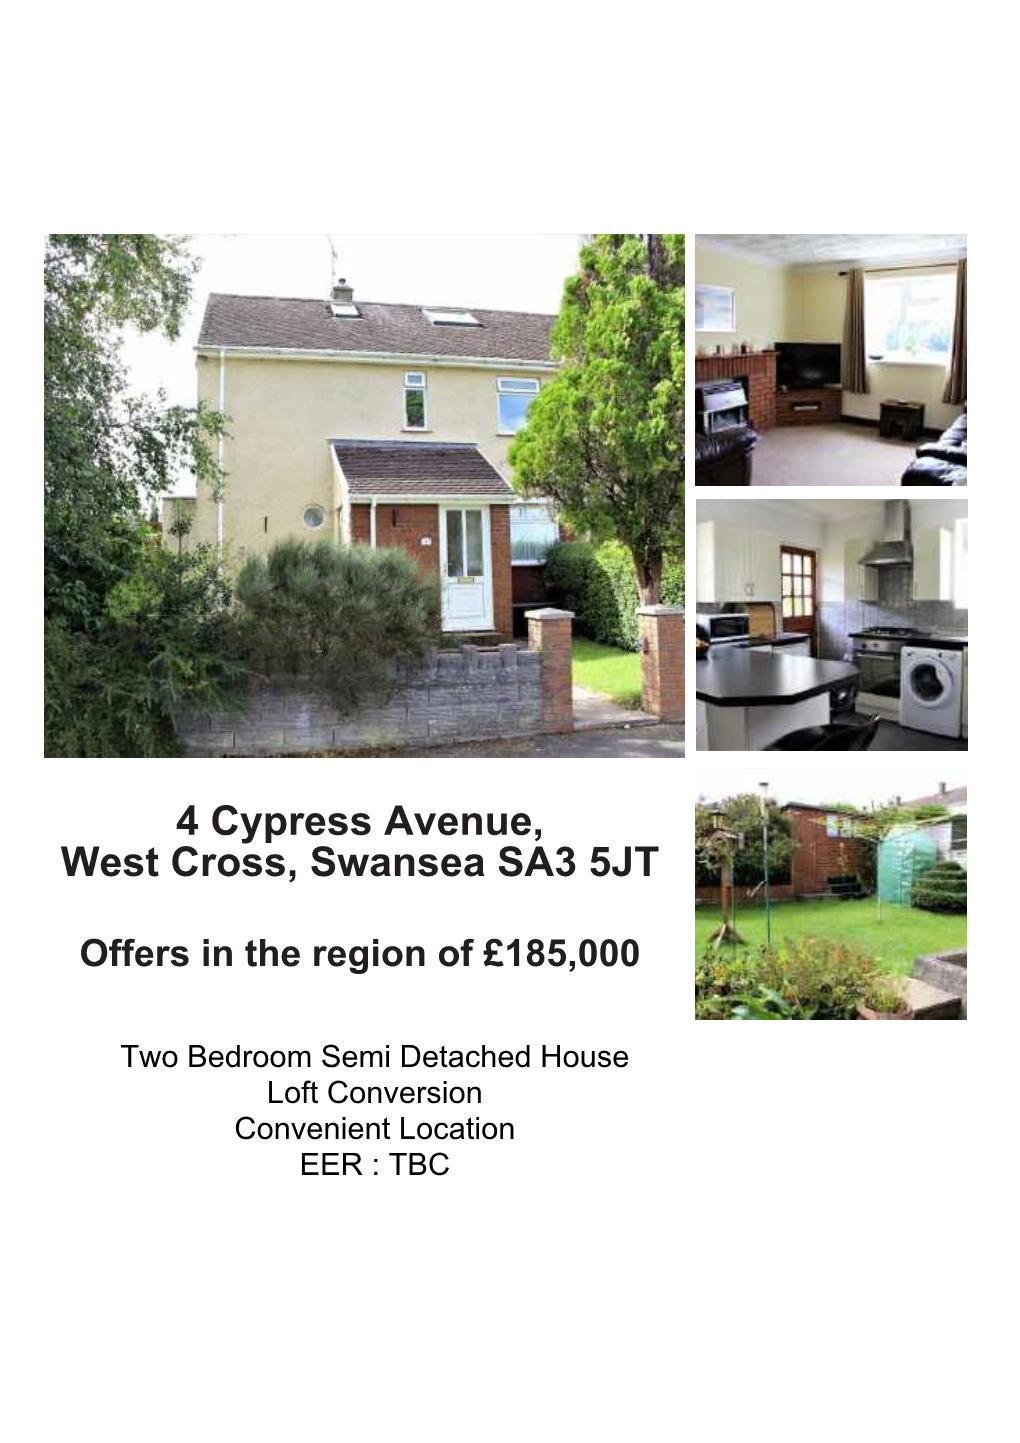 4 Cypress Avenue, West Cross, Swansea SA3 5JT